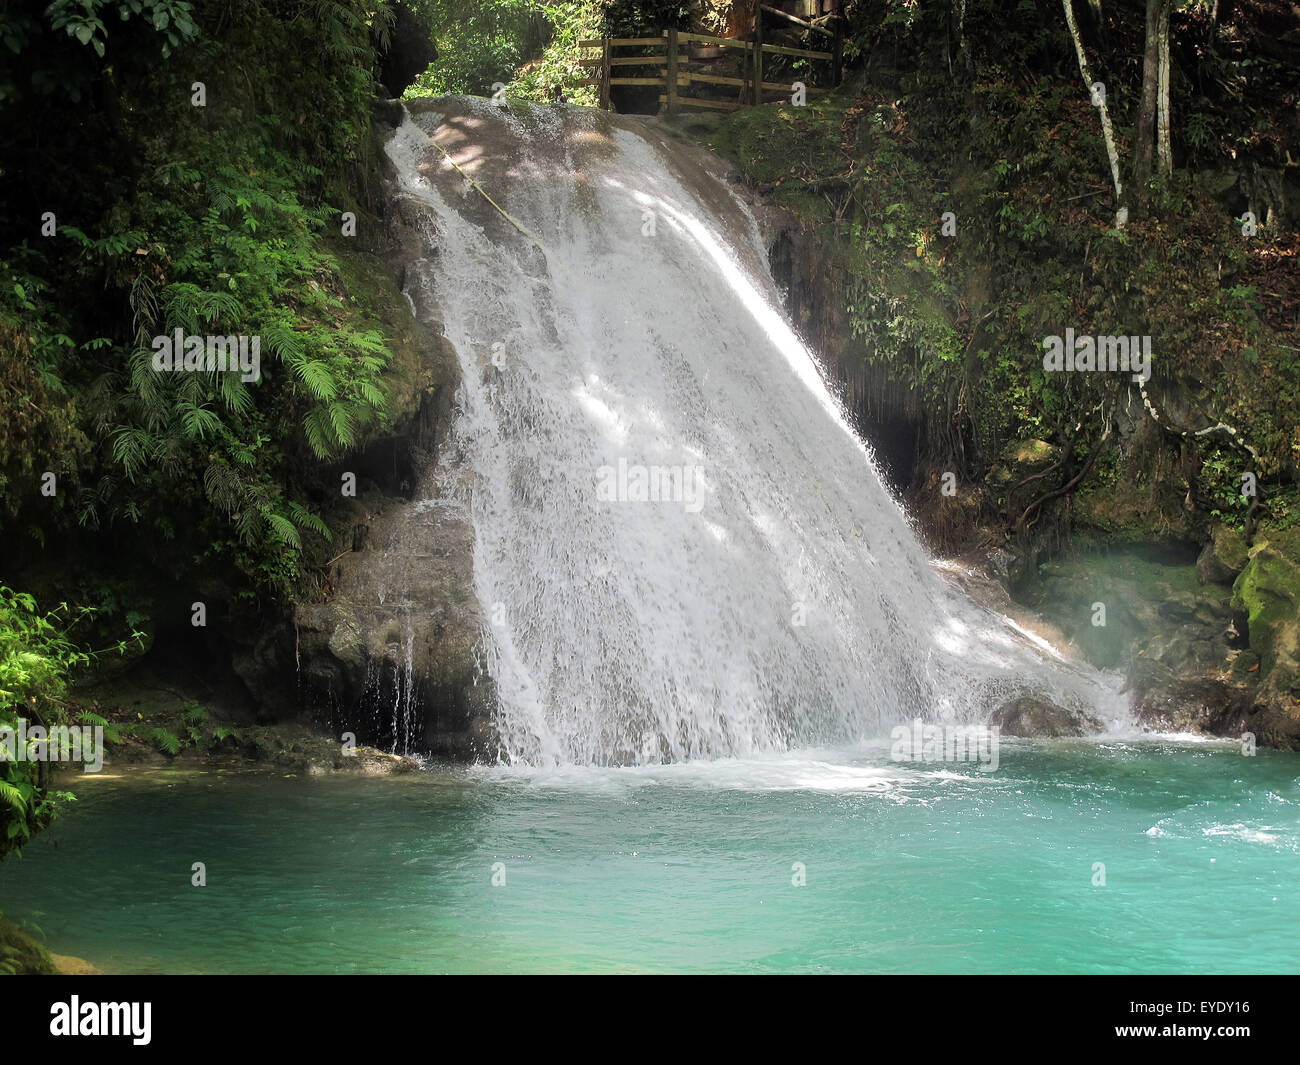 Waterfall at Blue Hole, White River, Ocho Rios, St. Ann, Jamaica Stock Photo